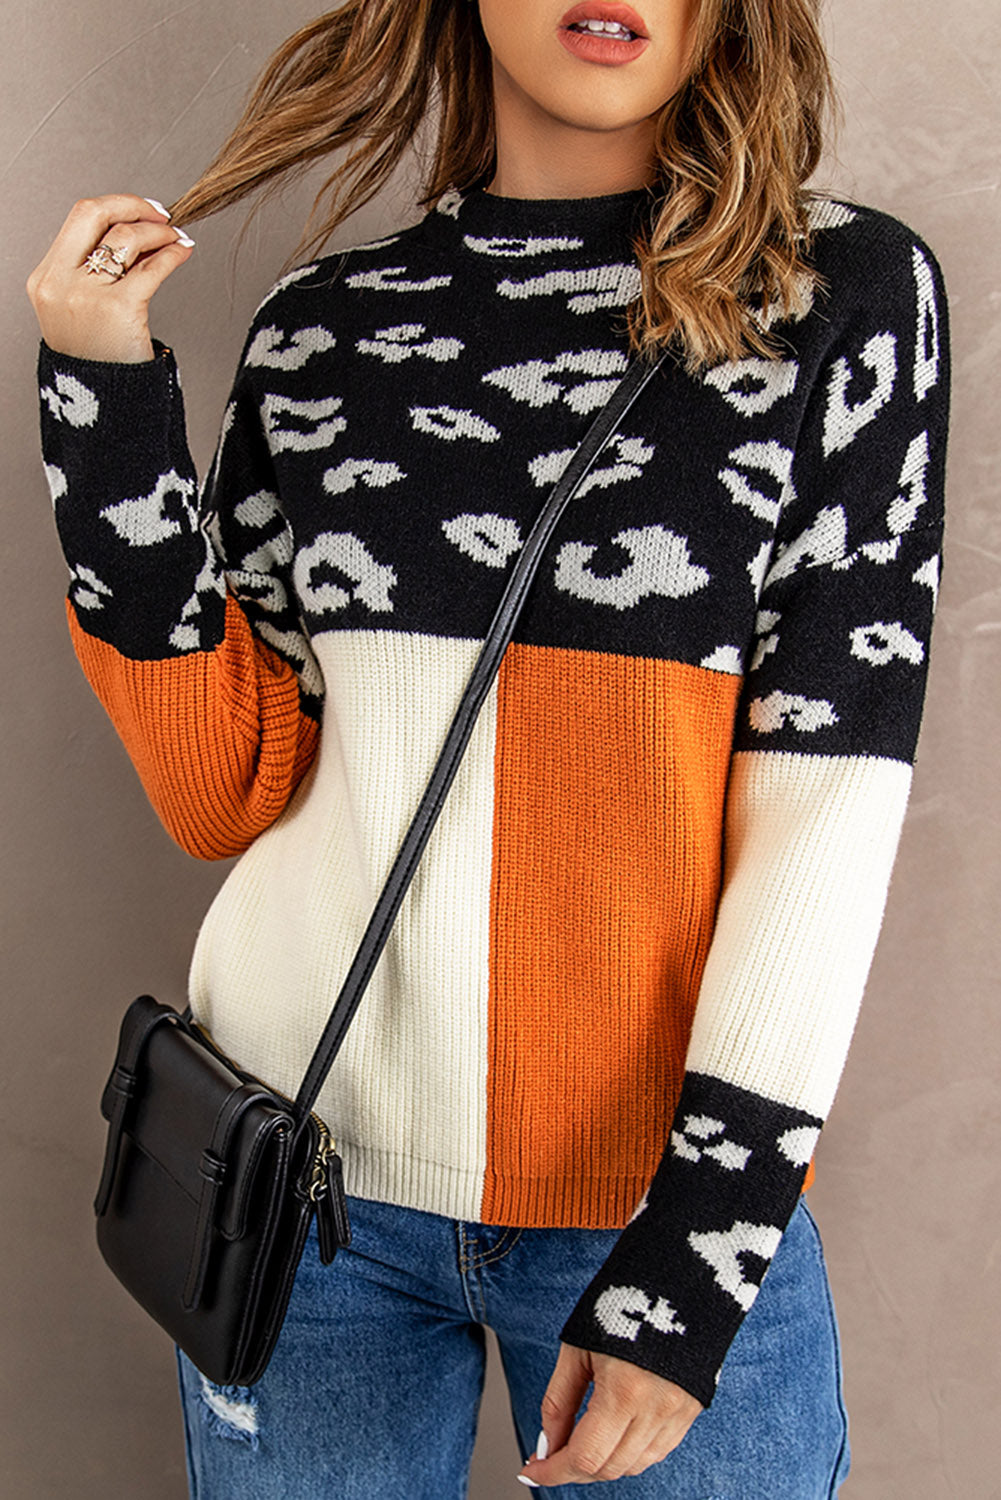 Leopard Colorblock Mock Neck Sweater